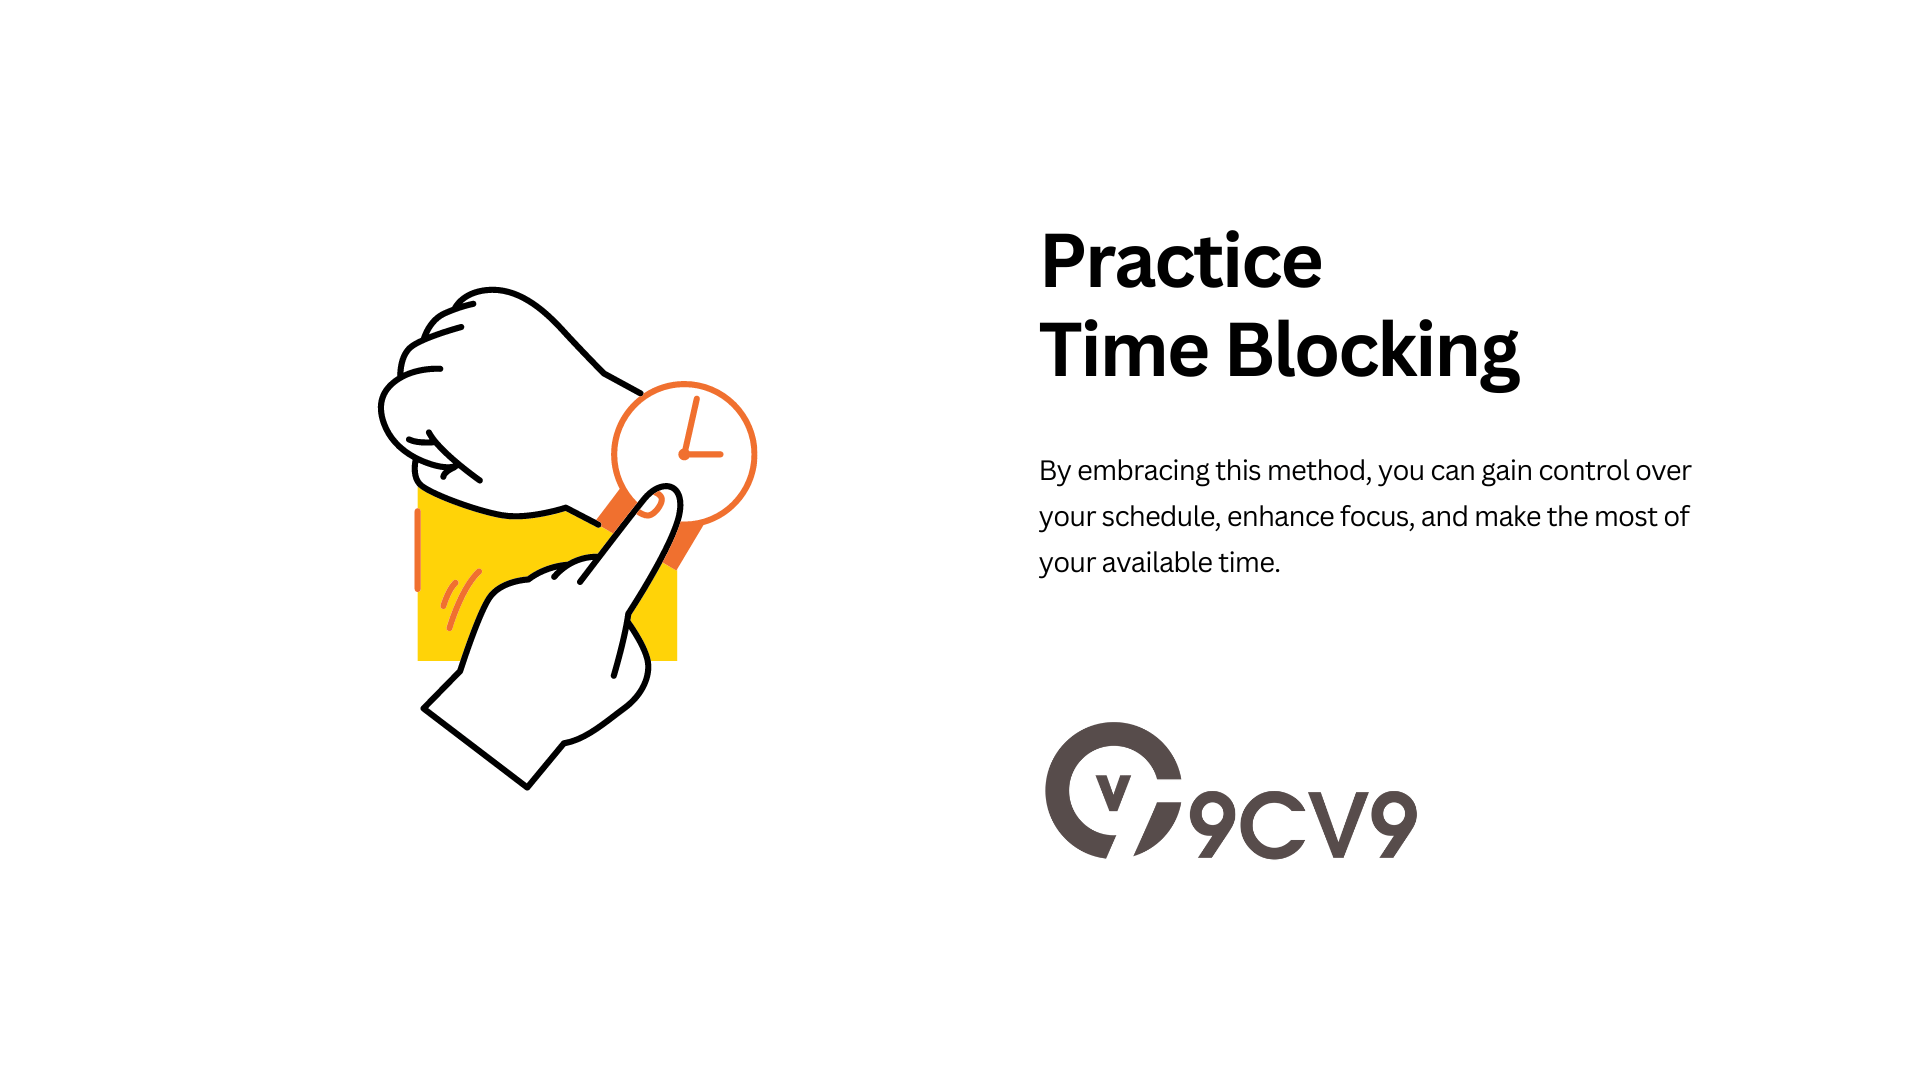 Practice Time Blocking